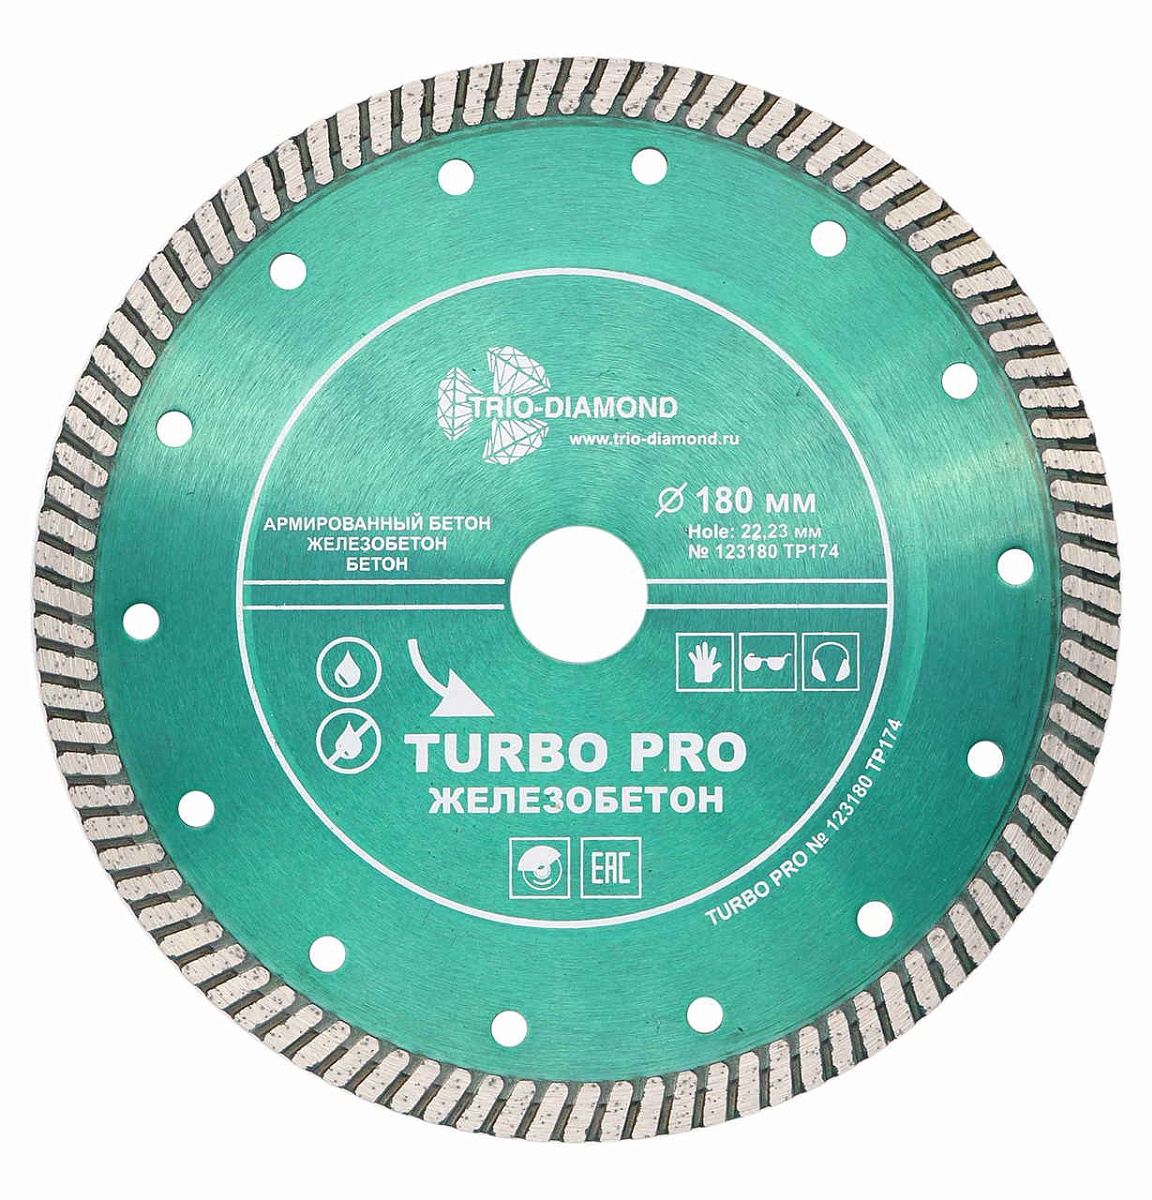 Trio-Diamond турбо серия Turbo PRO Железобетон